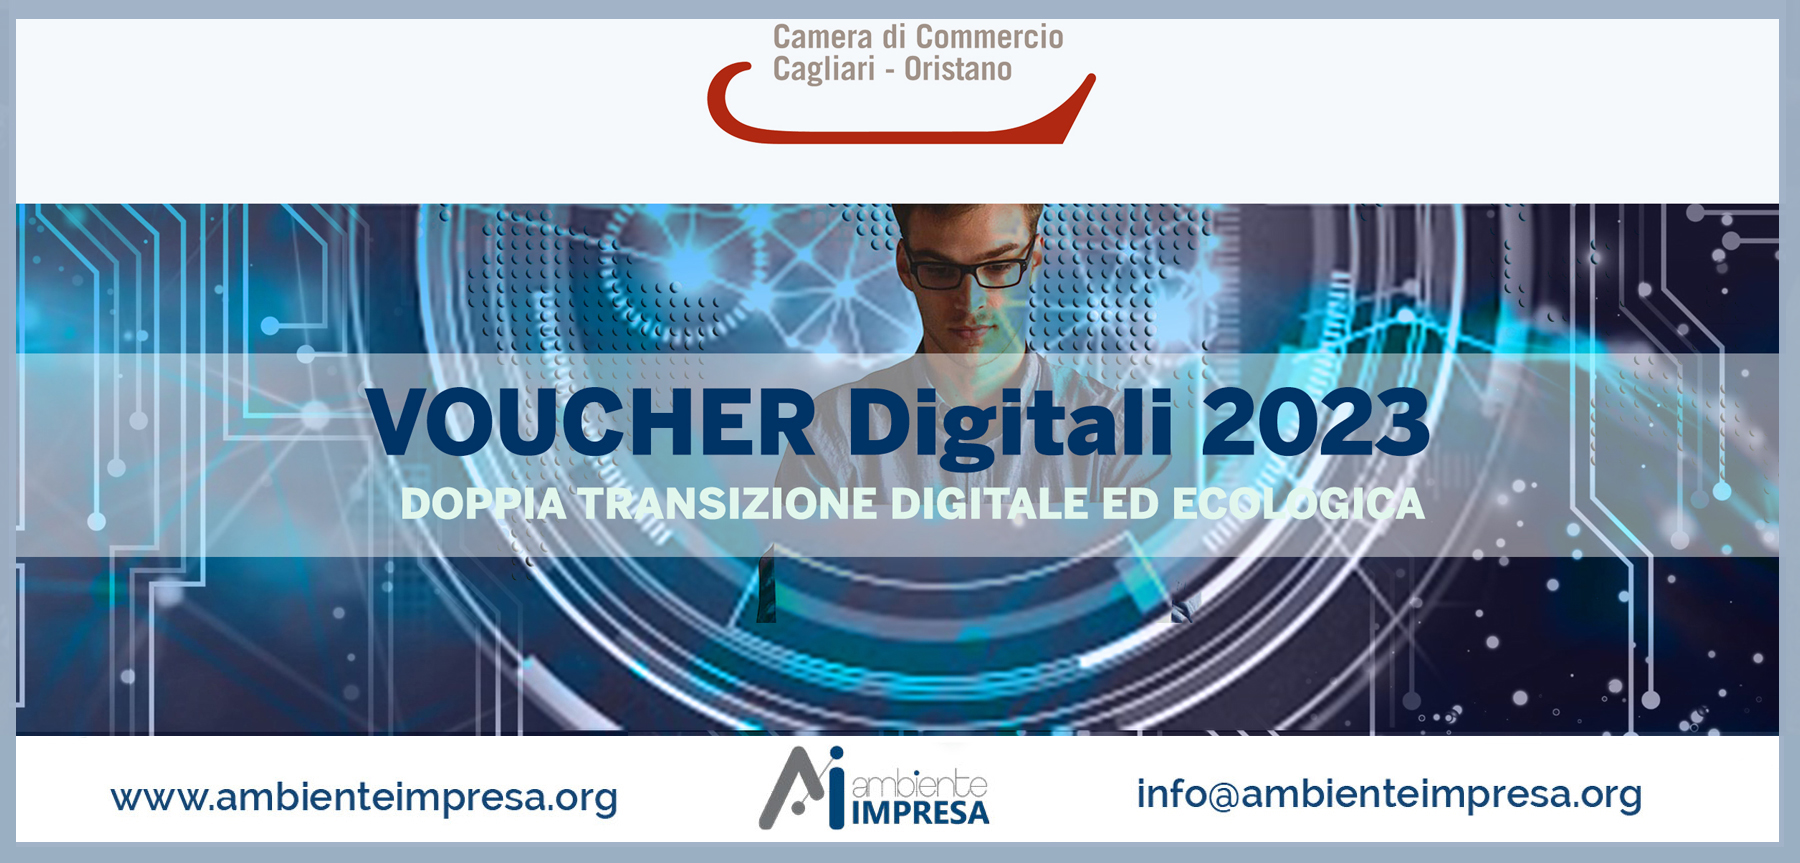 Voucher Digitali 2023 - Camera di commercio Ca - OR -  Ambiente Impresa srl - Cagliari